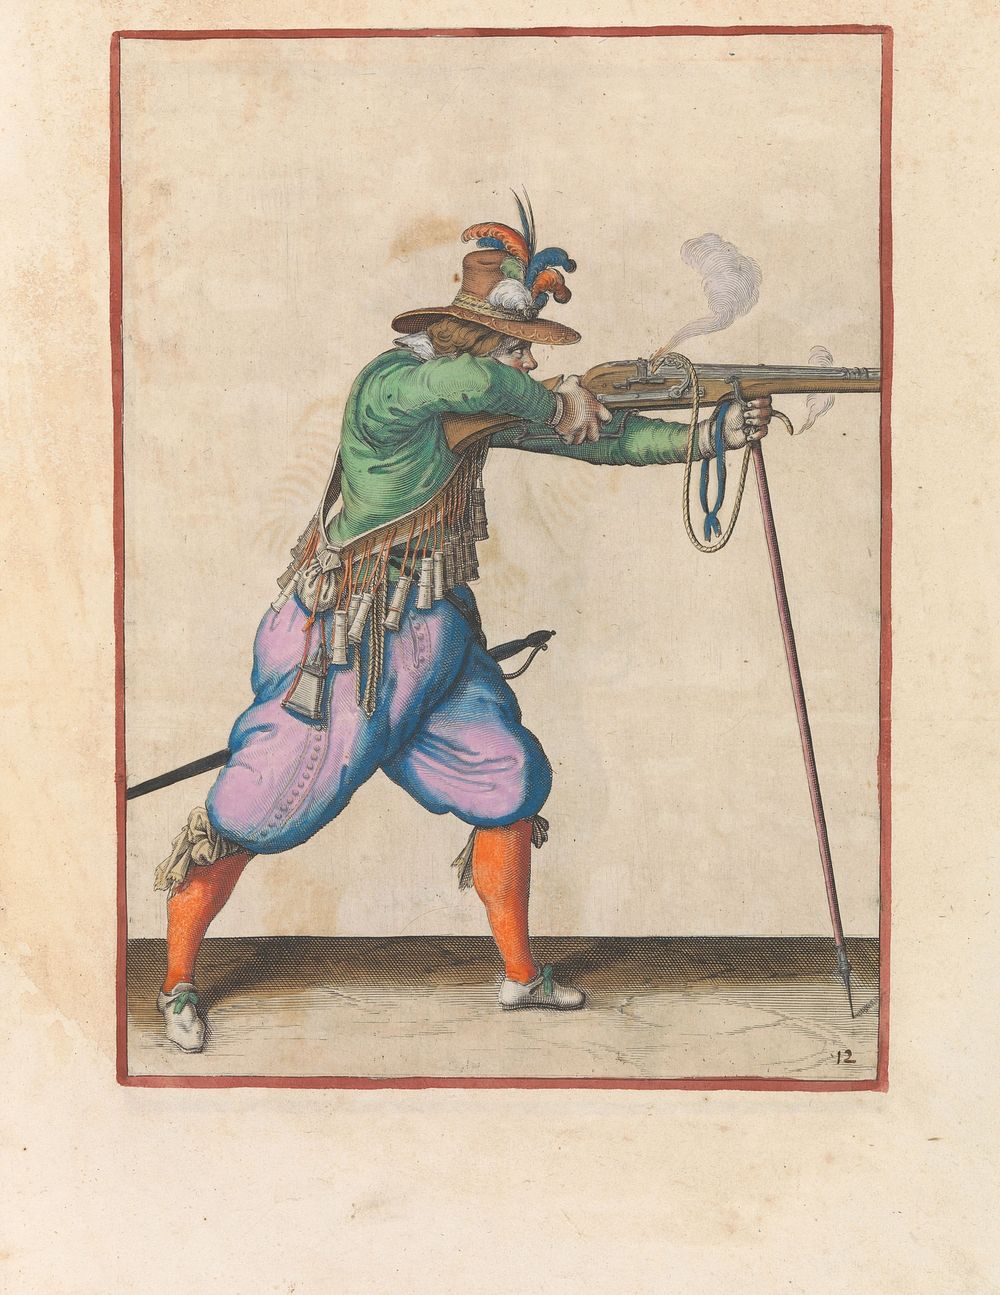 Soldaat die zijn musket, steunend op zijn furket, afvuurt (c. 1597 - 1607) by Jacques de Gheyn II and Jacques de Gheyn II